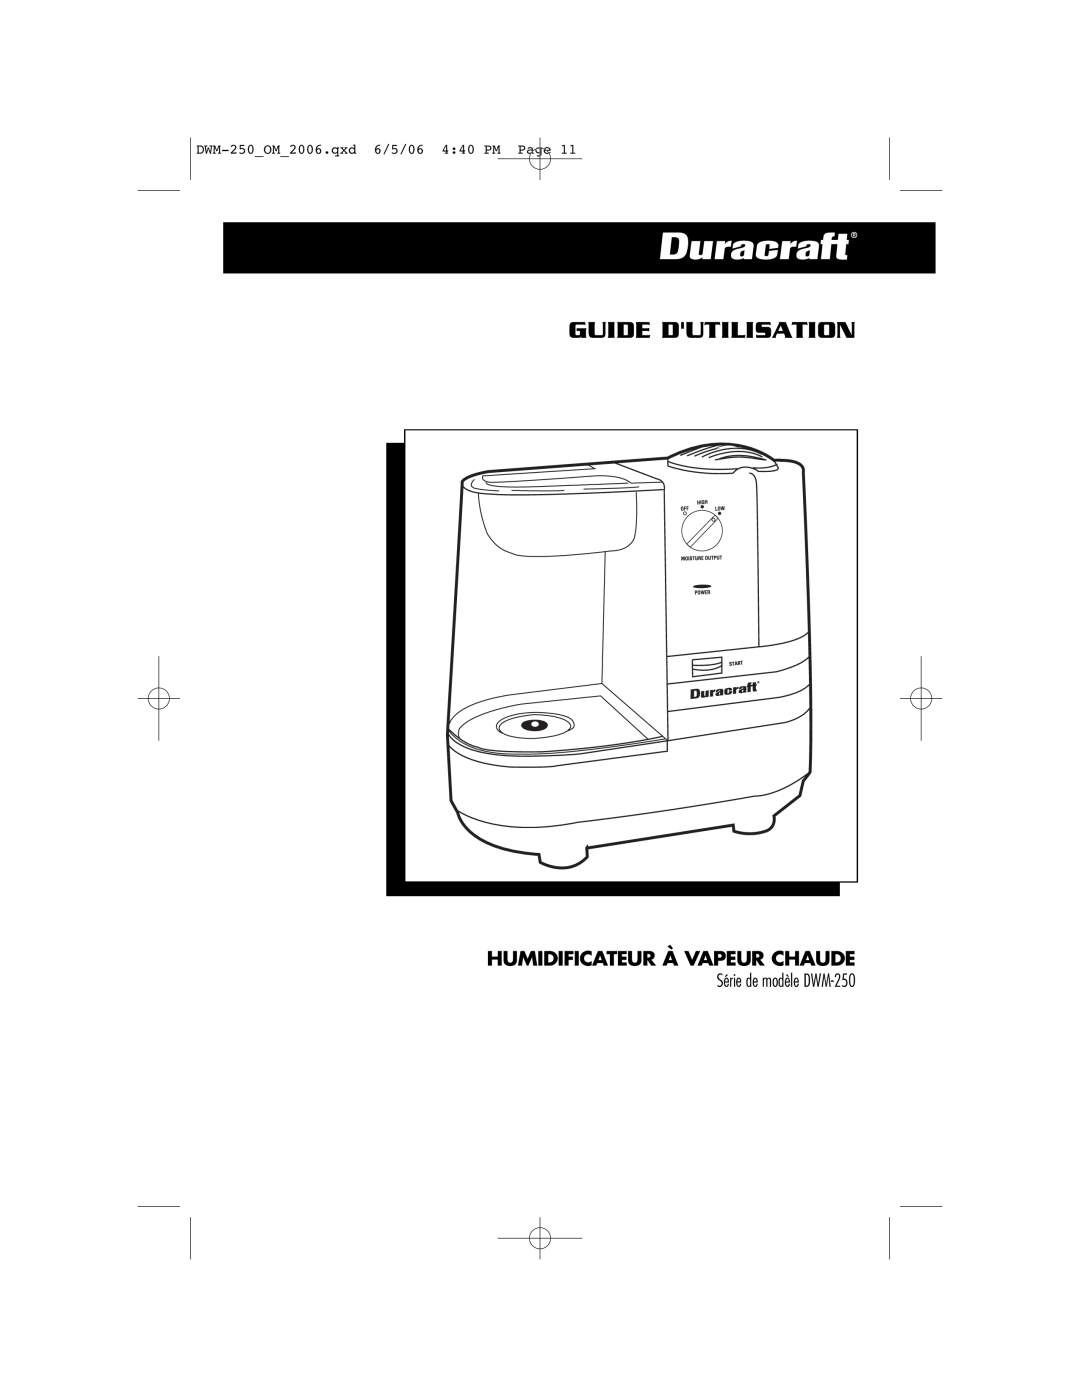 Duracraft owner manual Guide Dutilisation, Humidificateur À Vapeur Chaude, DWM-250OM2006.qxd 6/5/06 440 PM Page 